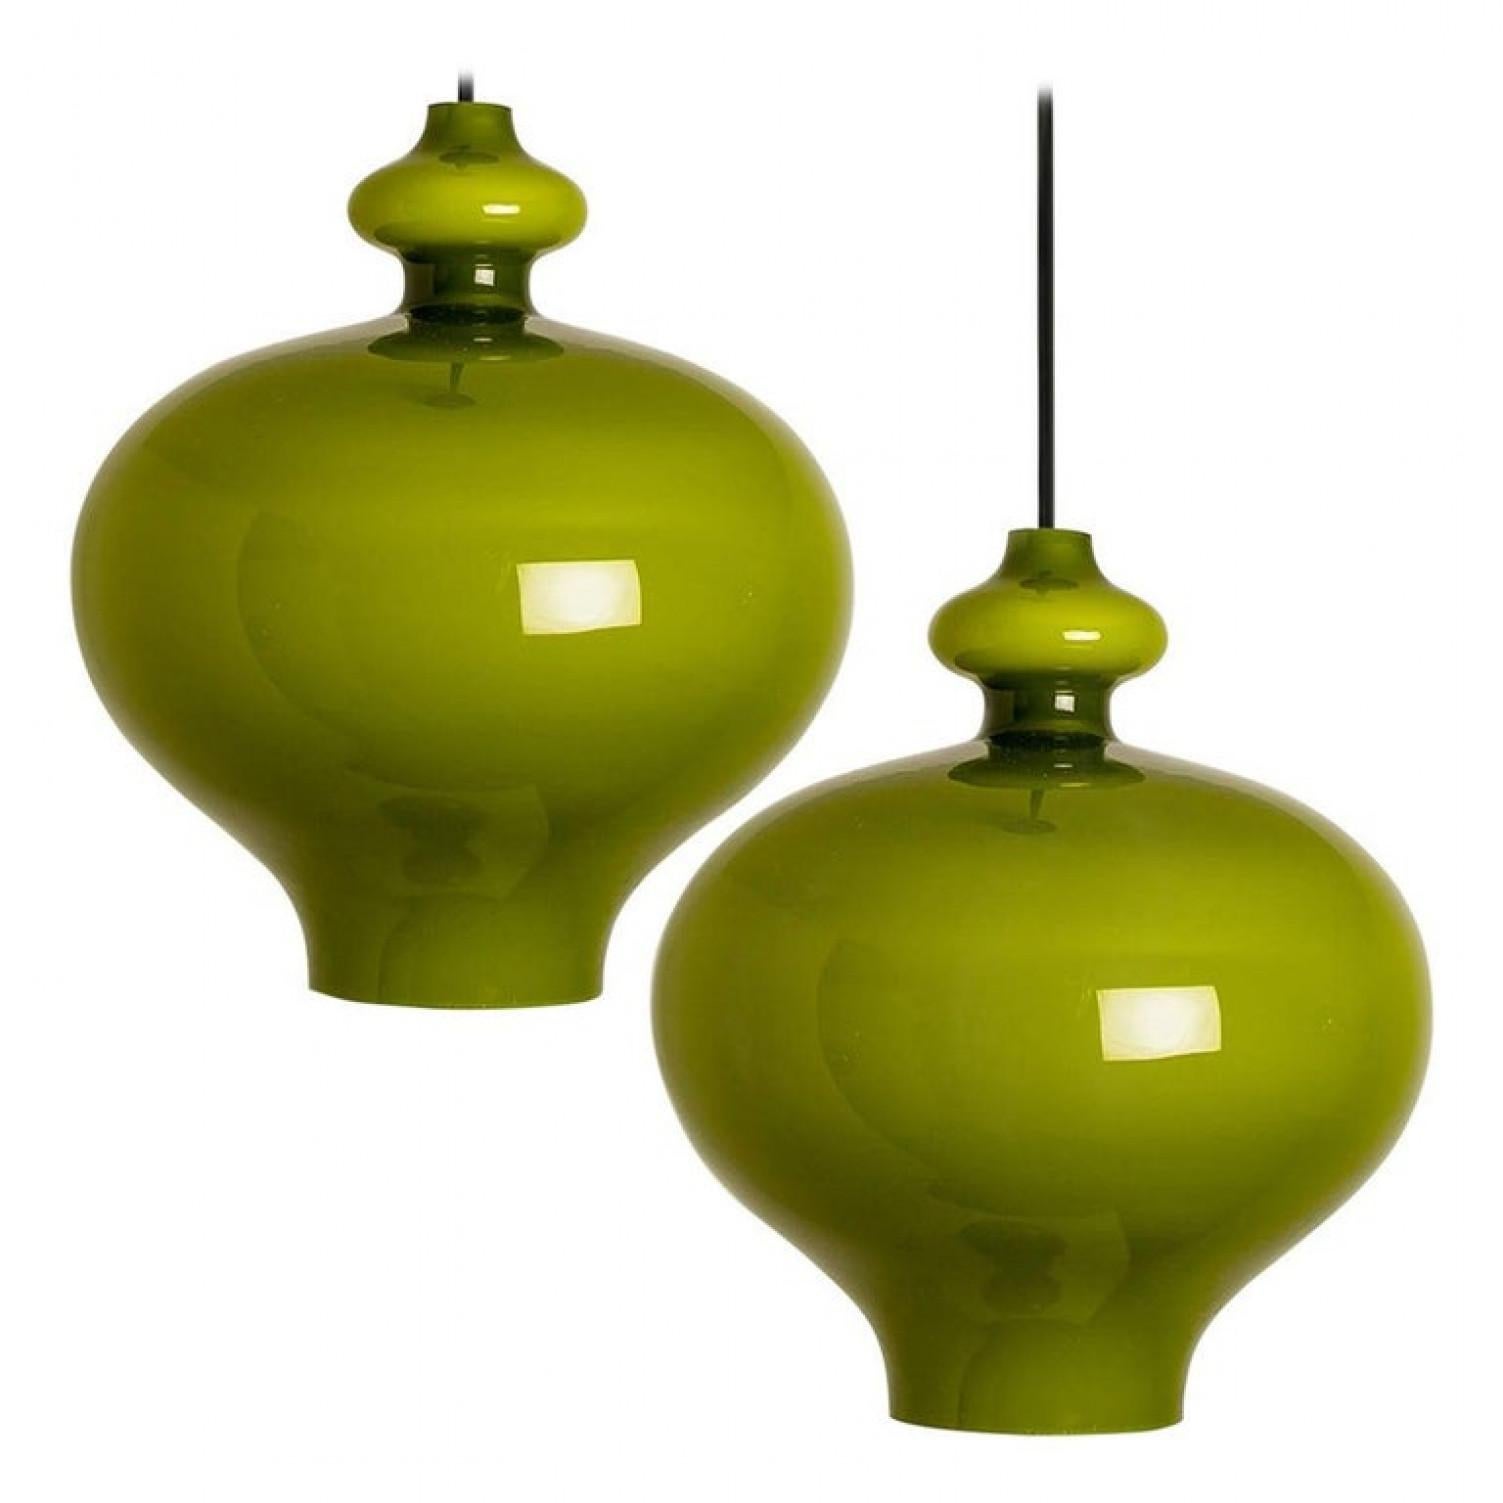 Modernistische Pendelleuchte aus olivgrünem Opalglas. Entworfen und gestaltet von H.A. Jacobson für Staff Leuchten, Deutschland, zweite Hälfte des Jahres 1960.

Bitte beachten Sie, dass der Preis für ein Paar gilt. Wir können verschiedene